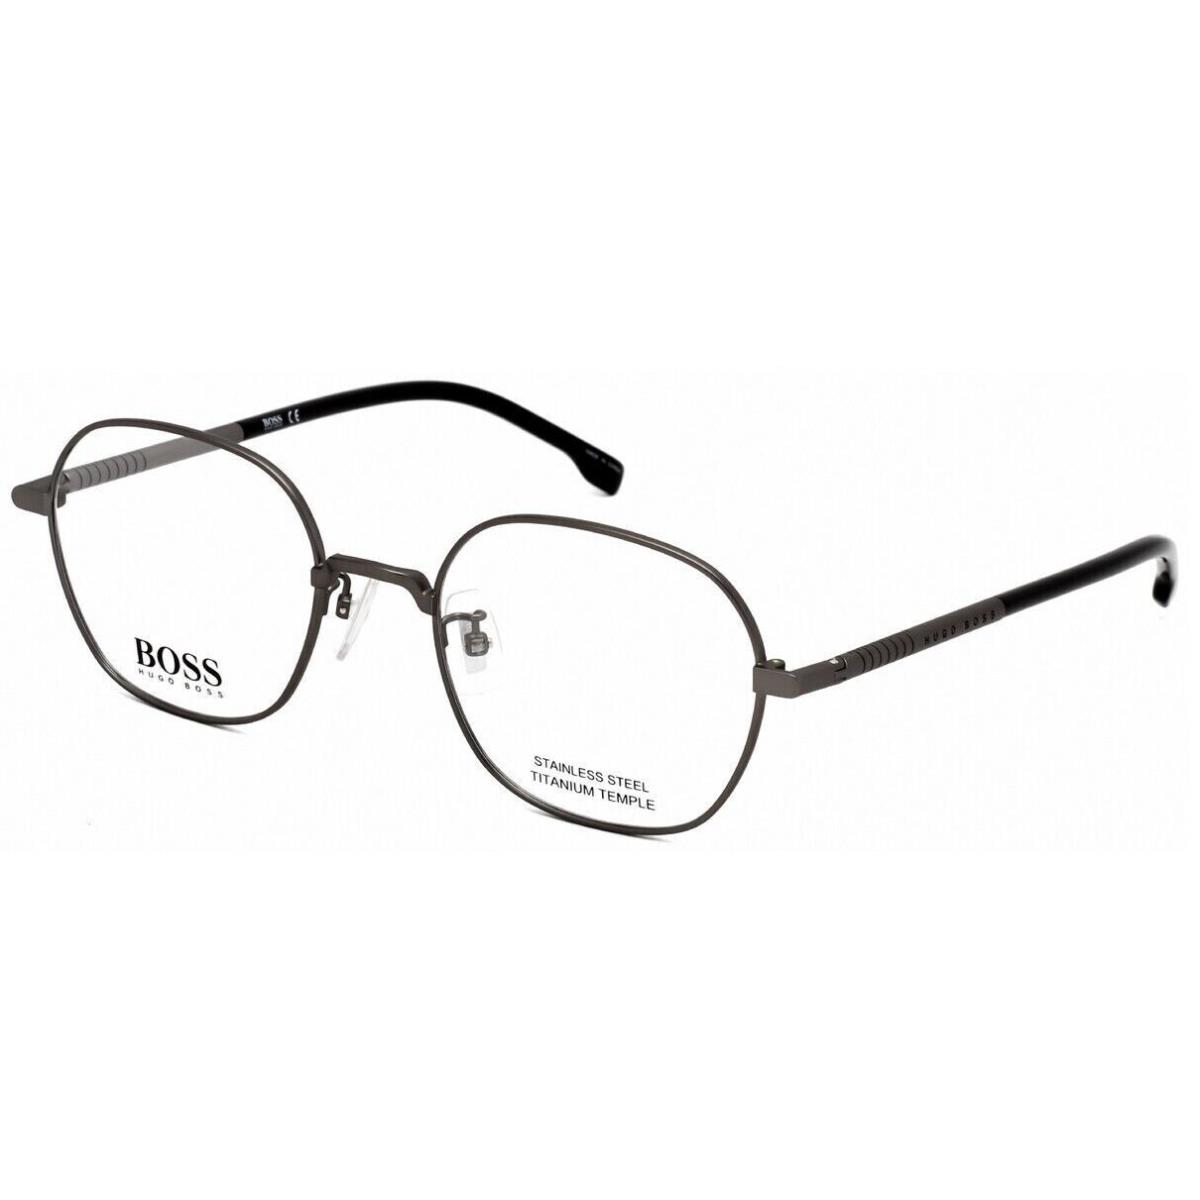 Boss Eyeglasses Hugo Boss Optical Frames Semi Matte Dark Ruthenium 1109/F 0R80